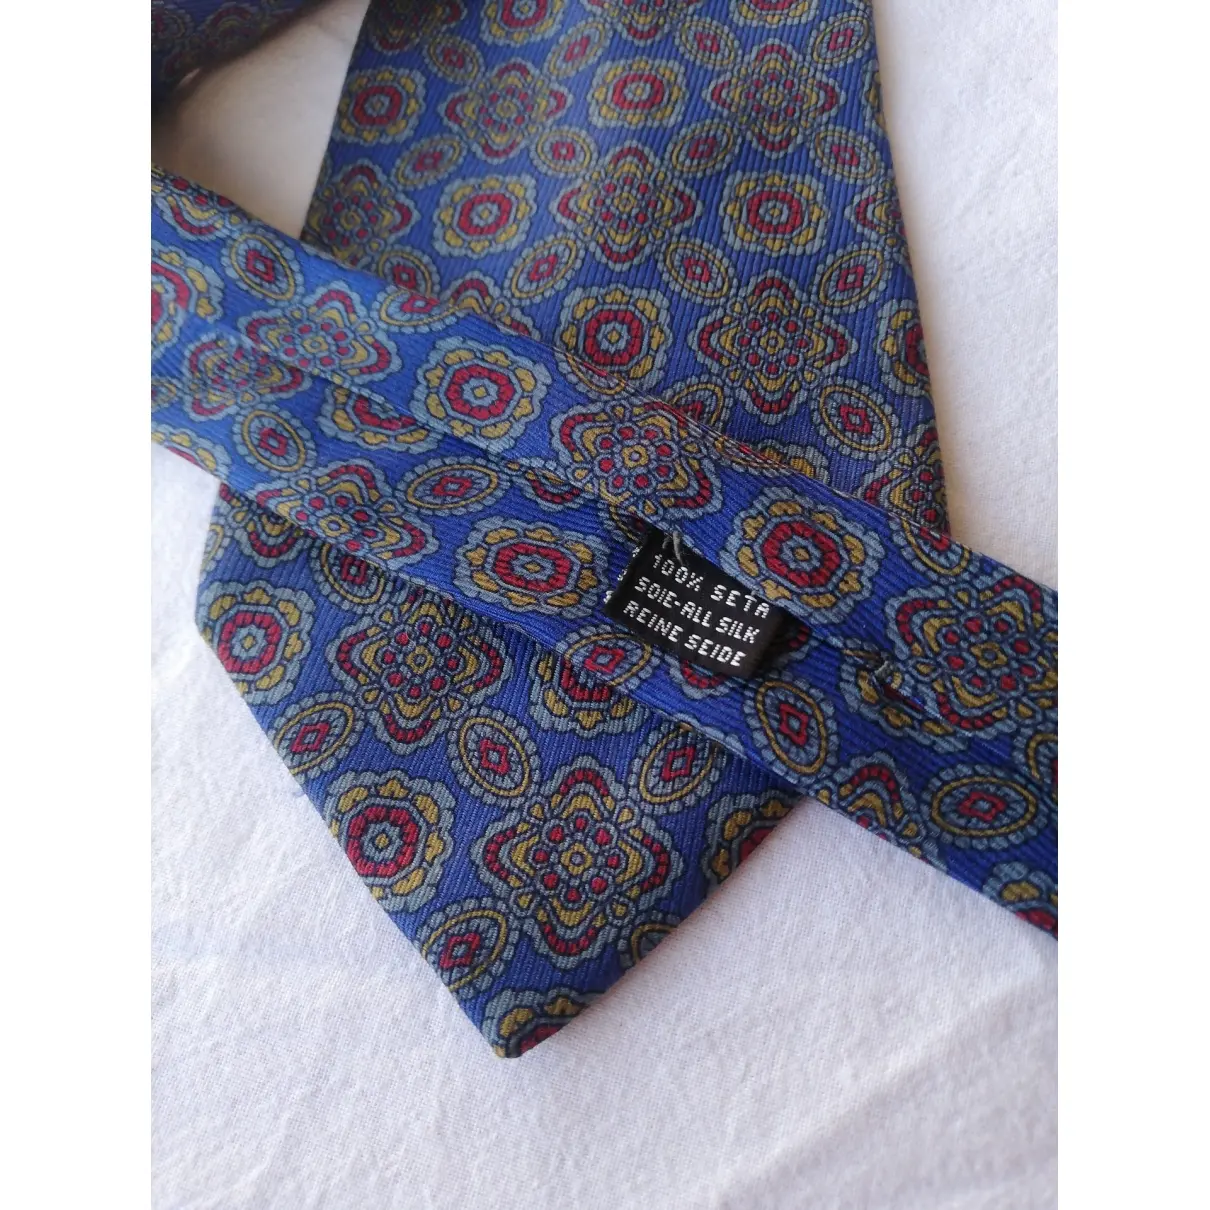 Saint Laurent Silk tie for sale - Vintage